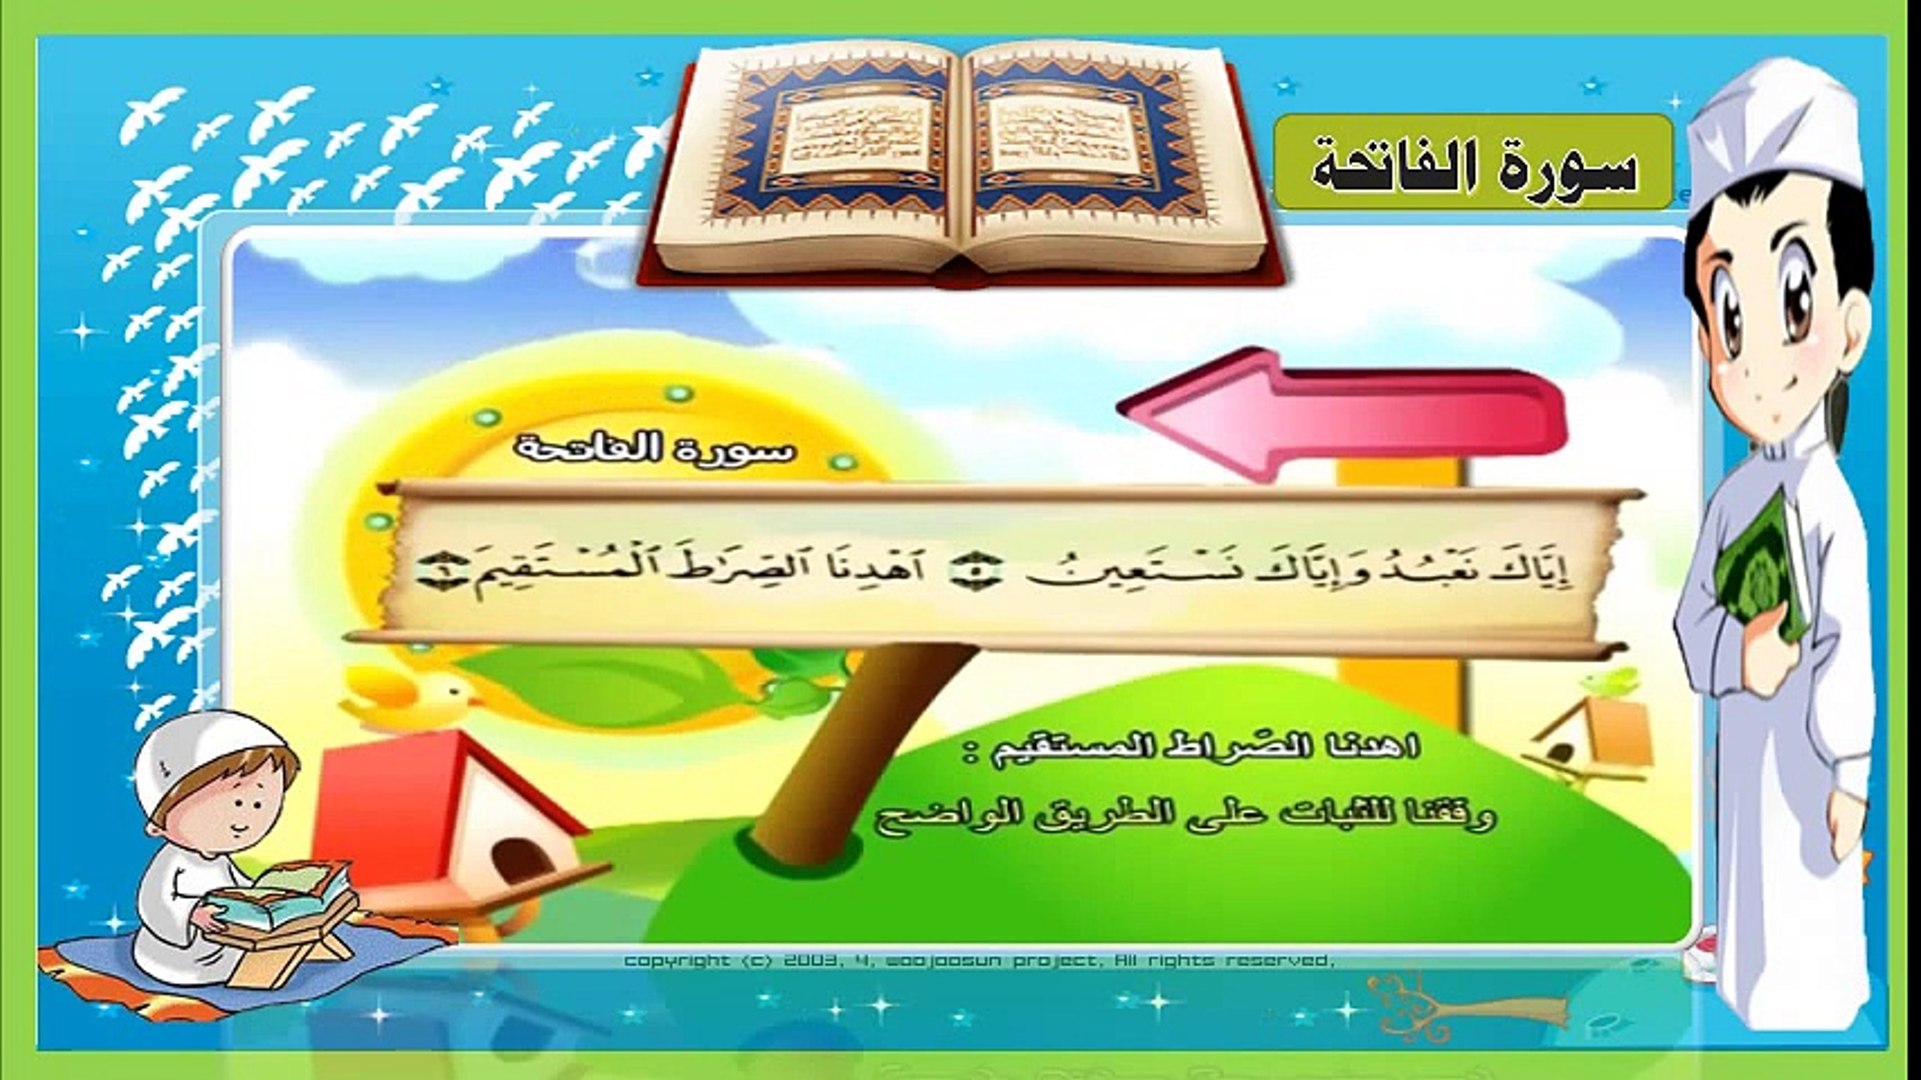 تعليم سورة الفاتحة للأطفال - مكررة ثلاث مرات - تحفيظ القرآن - فيديو  Dailymotion